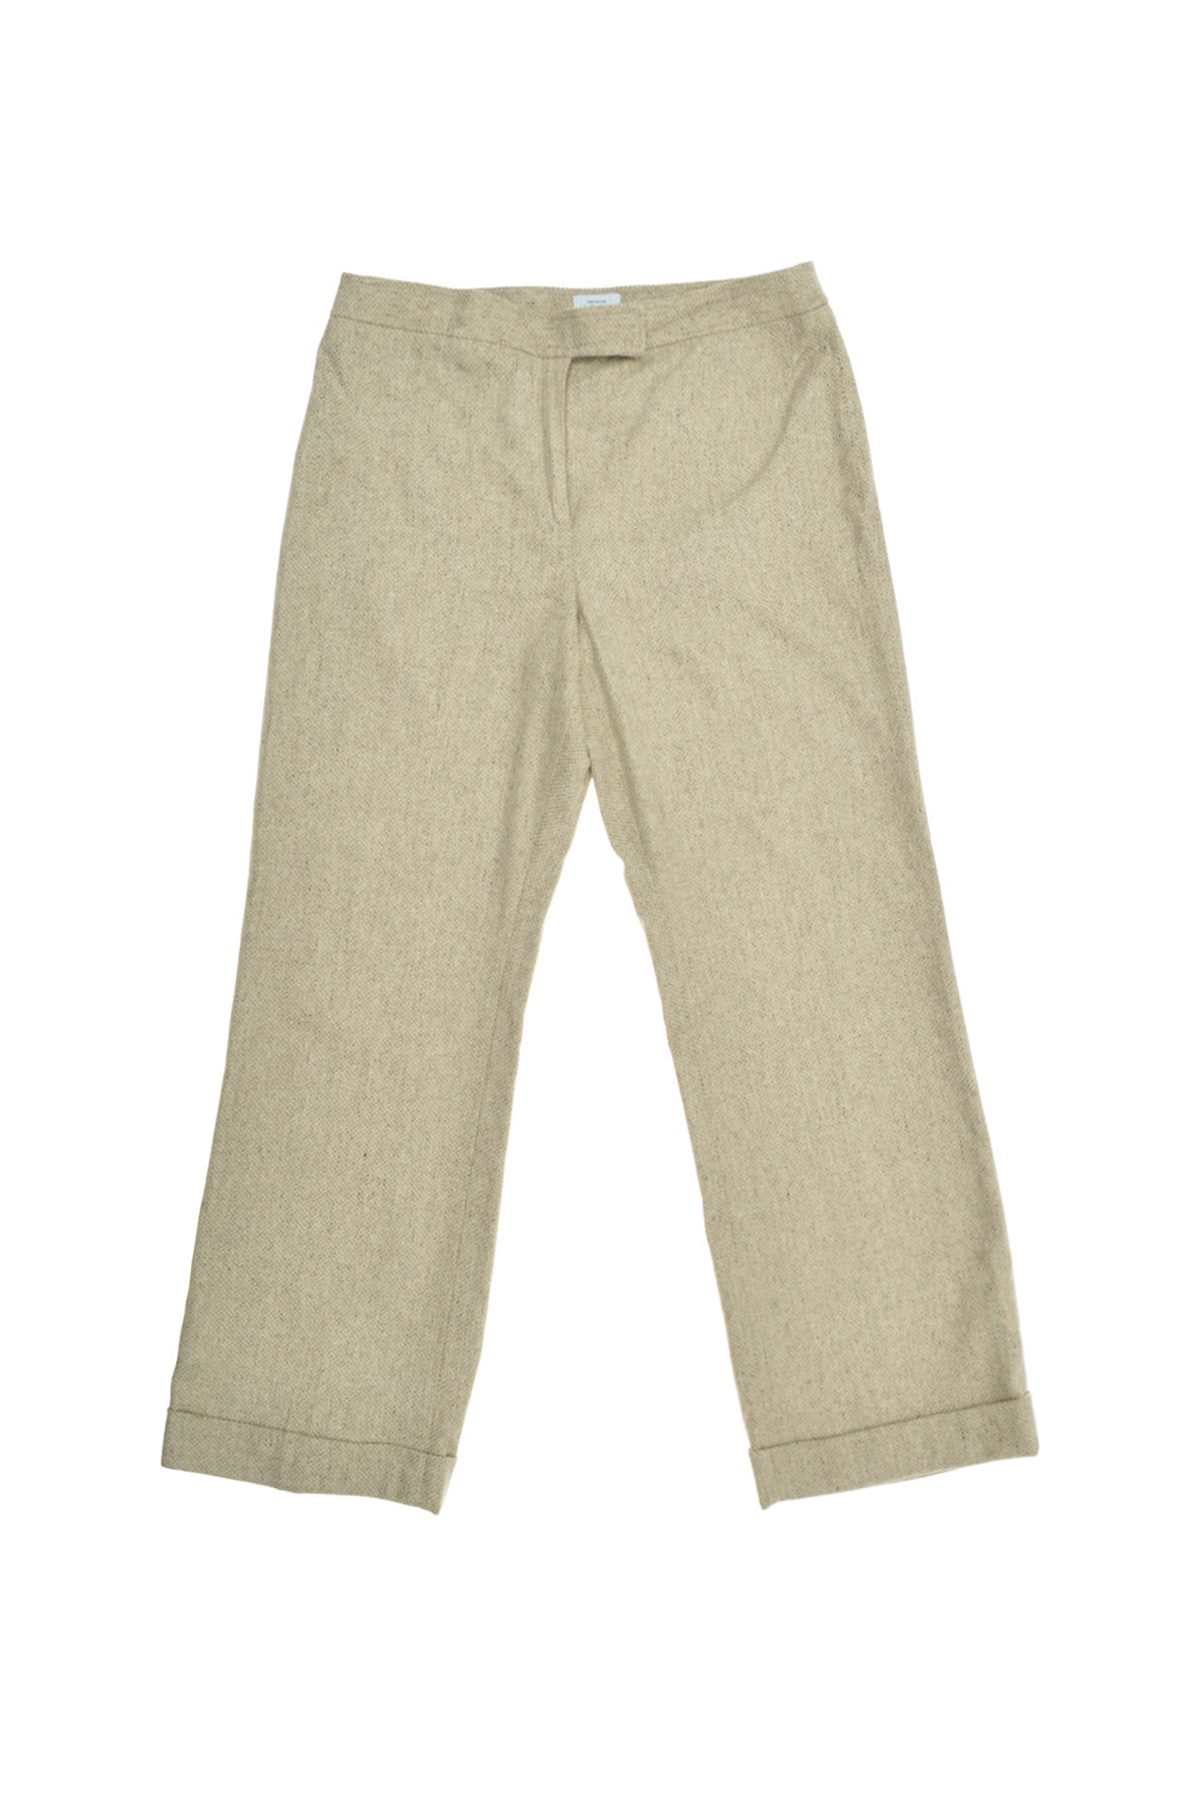 Women's trousers - ANN TAYLOR LOFT - 0